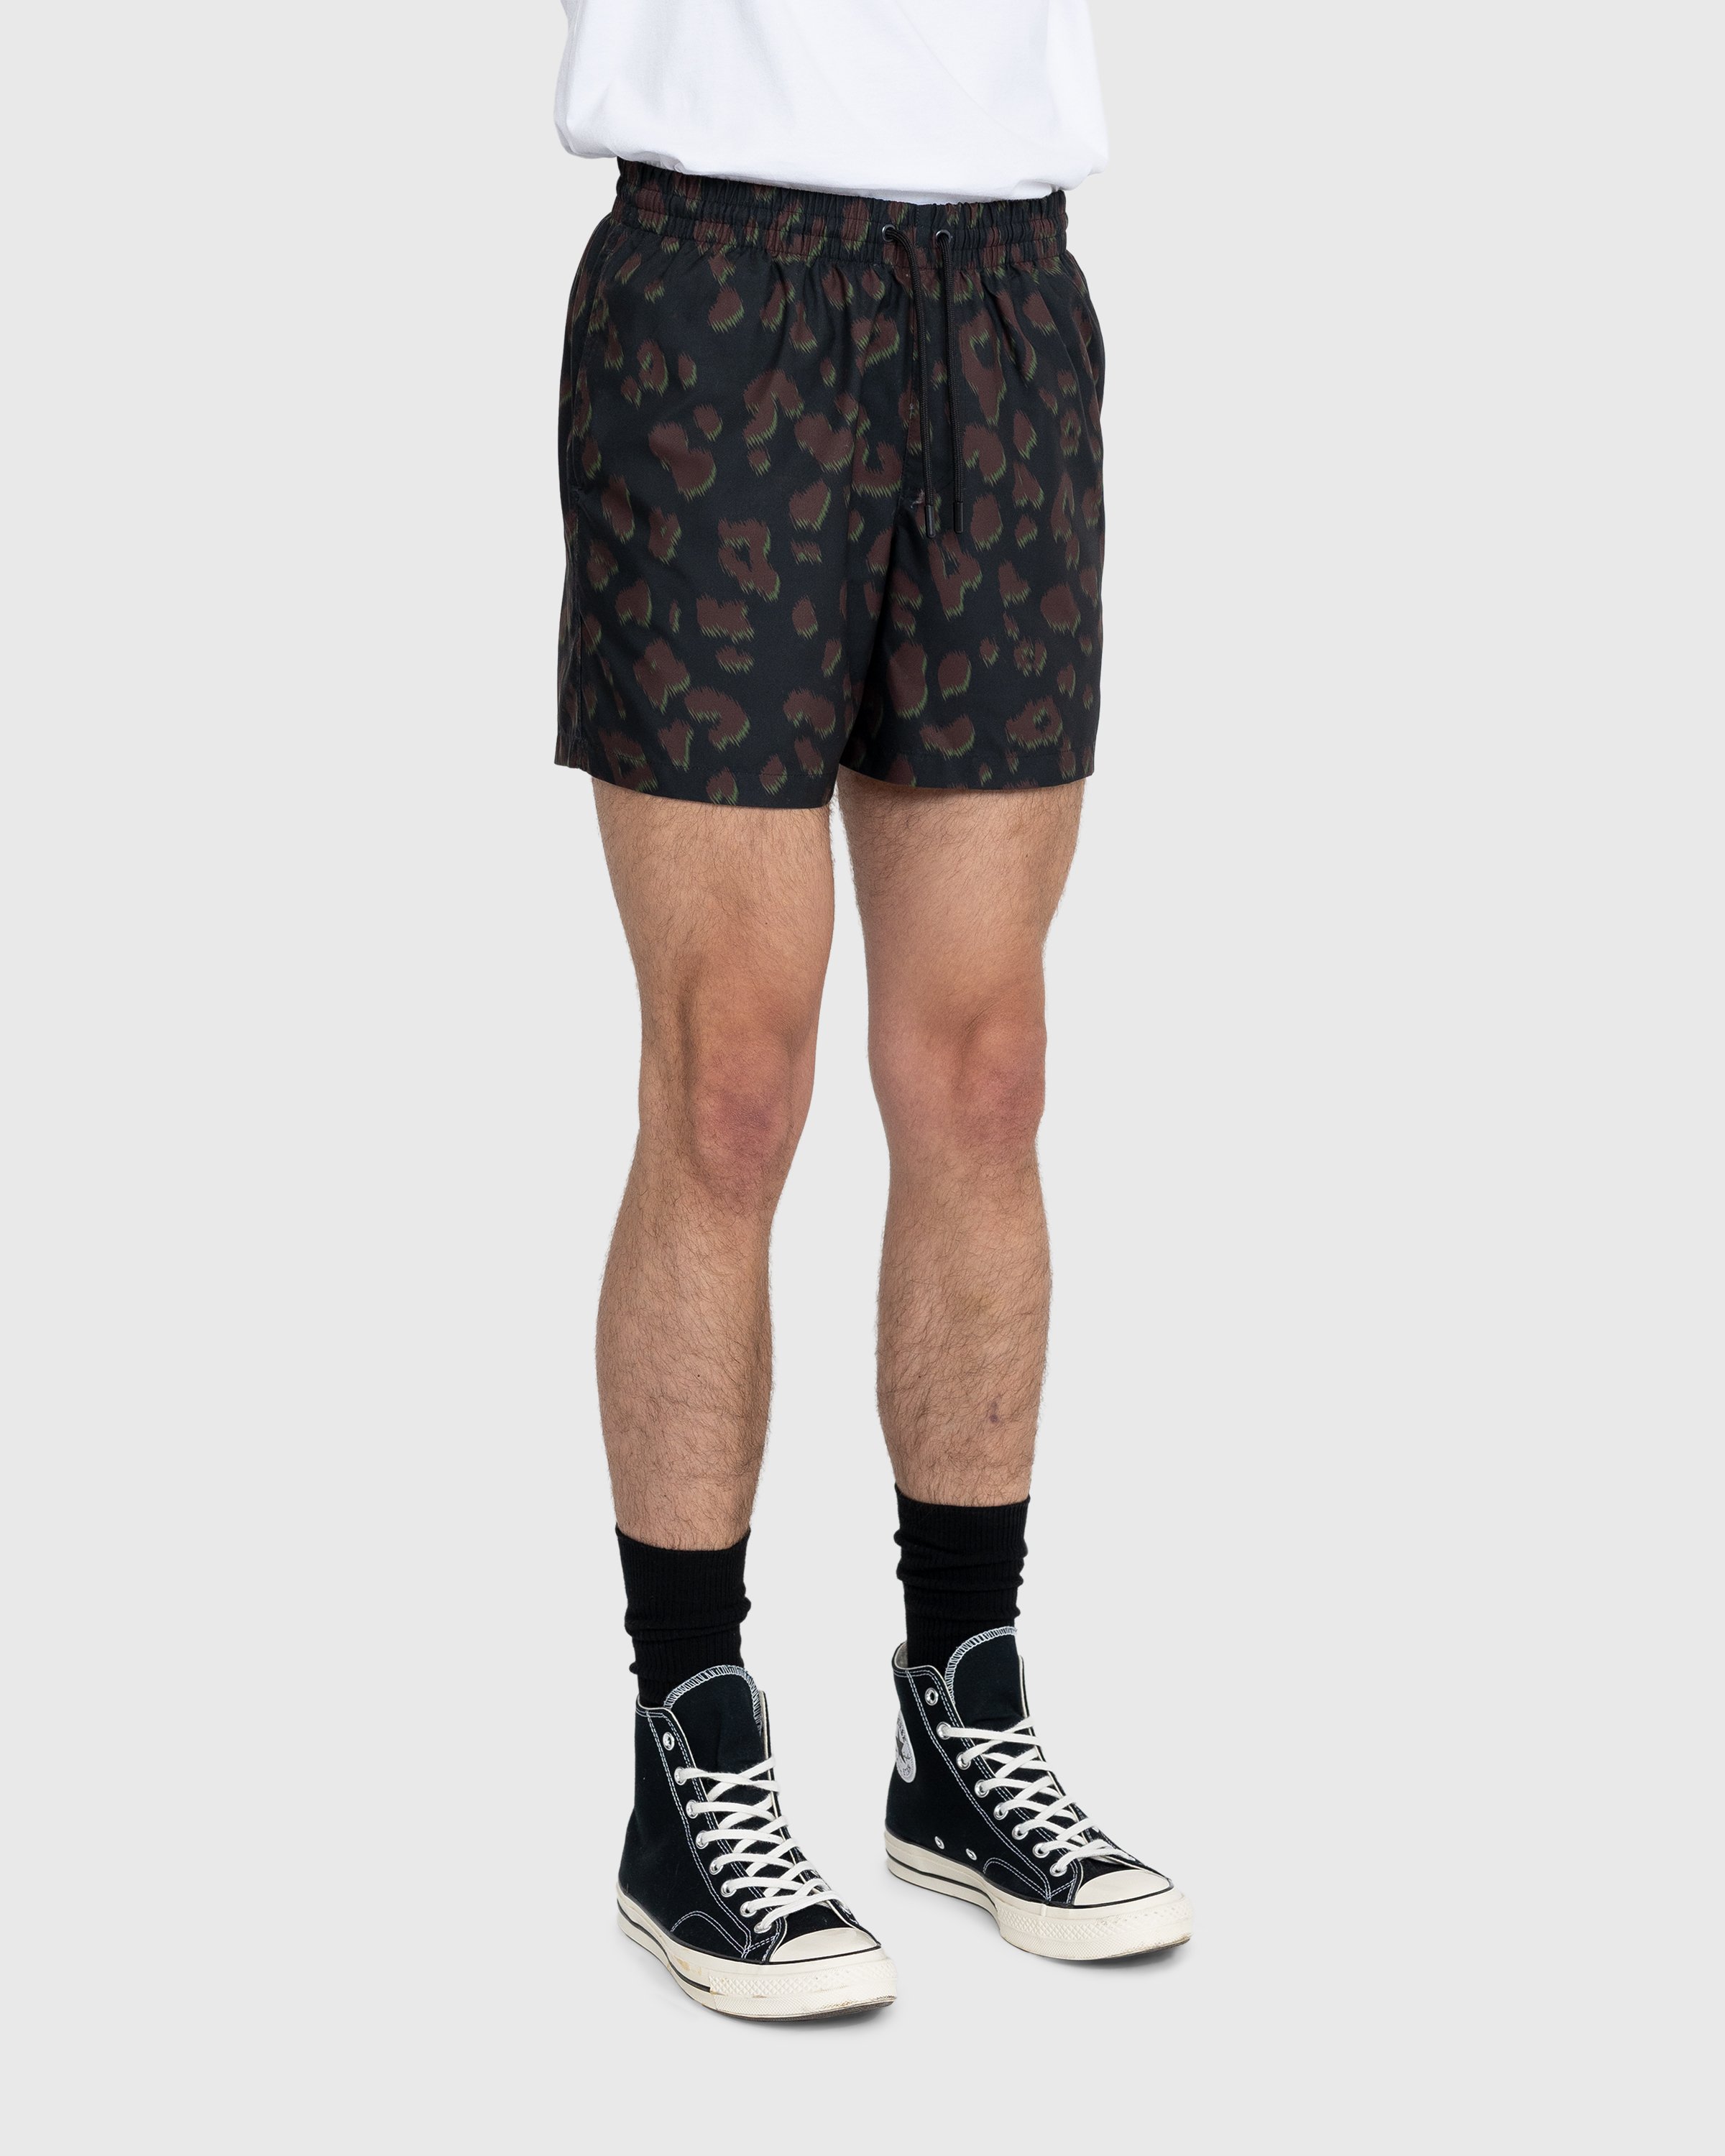 Dries van Noten - Phibbs Shorts - Clothing - Black - Image 3